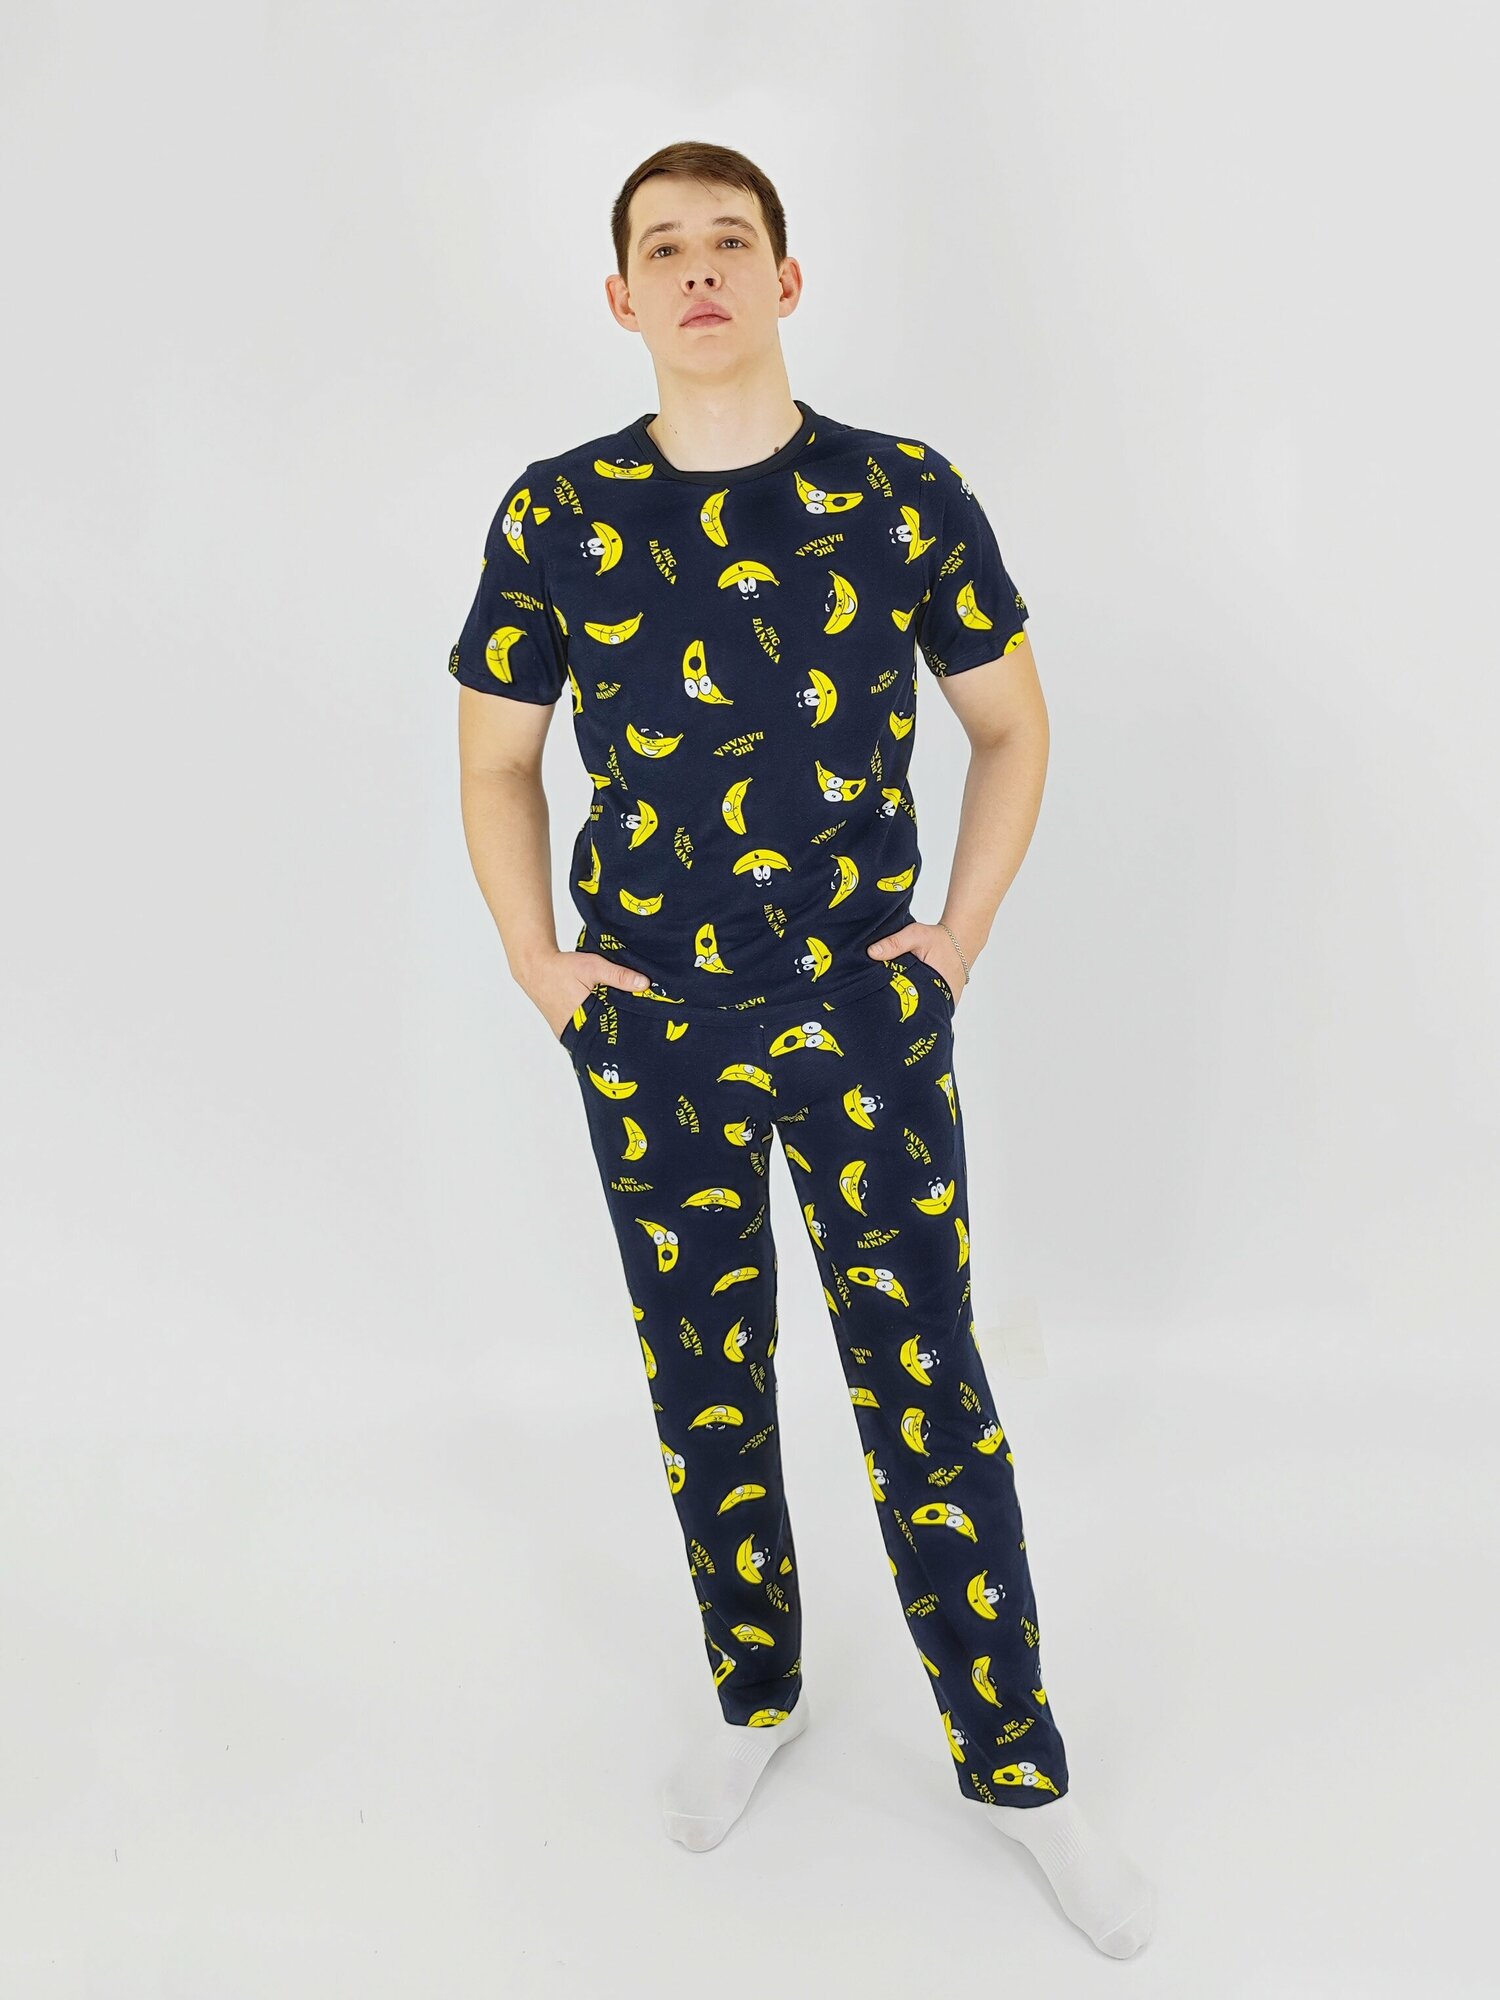 Мужская пижама, мужской пижамный комплект ARISTARHOV, Футболка + Брюки, Бананчик, синий желтый, размер 54 - фотография № 2